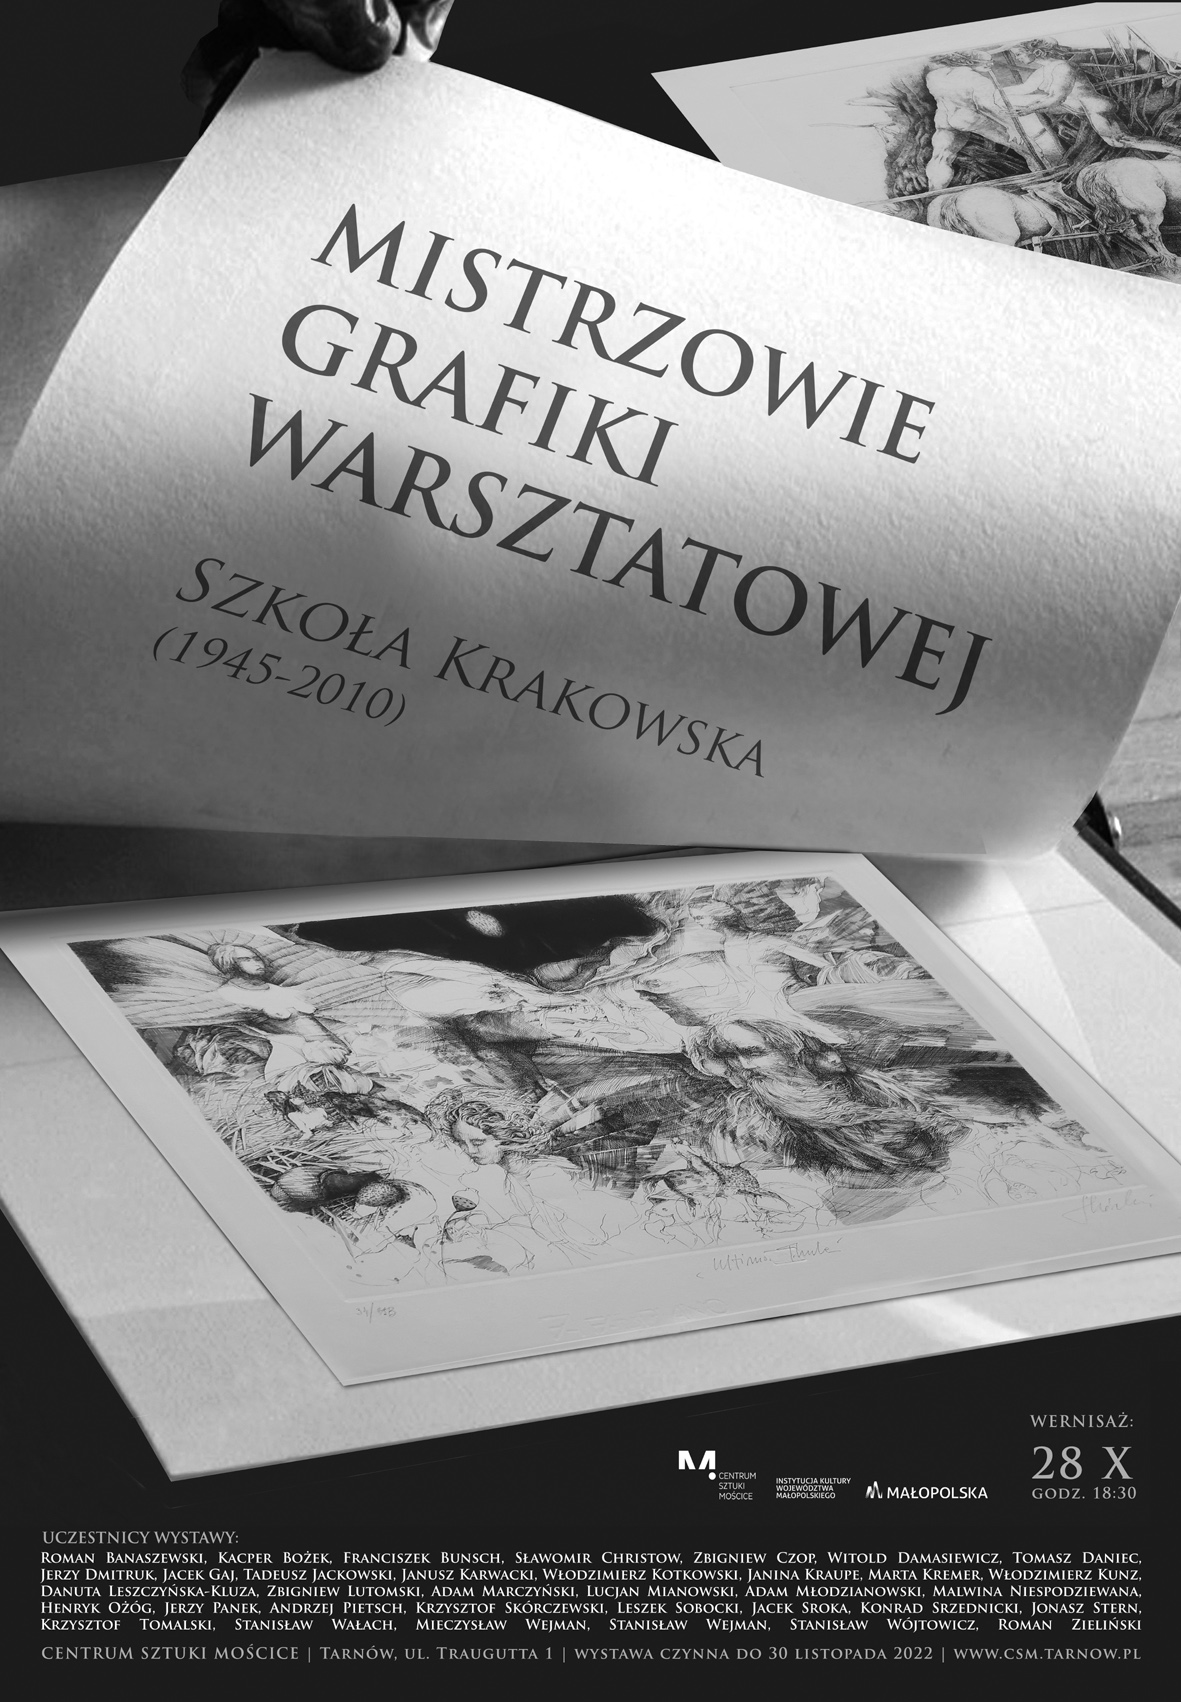 Mistrzowie Grafiki Warsztatowej. Szkoła Krakowska (1945-2010)